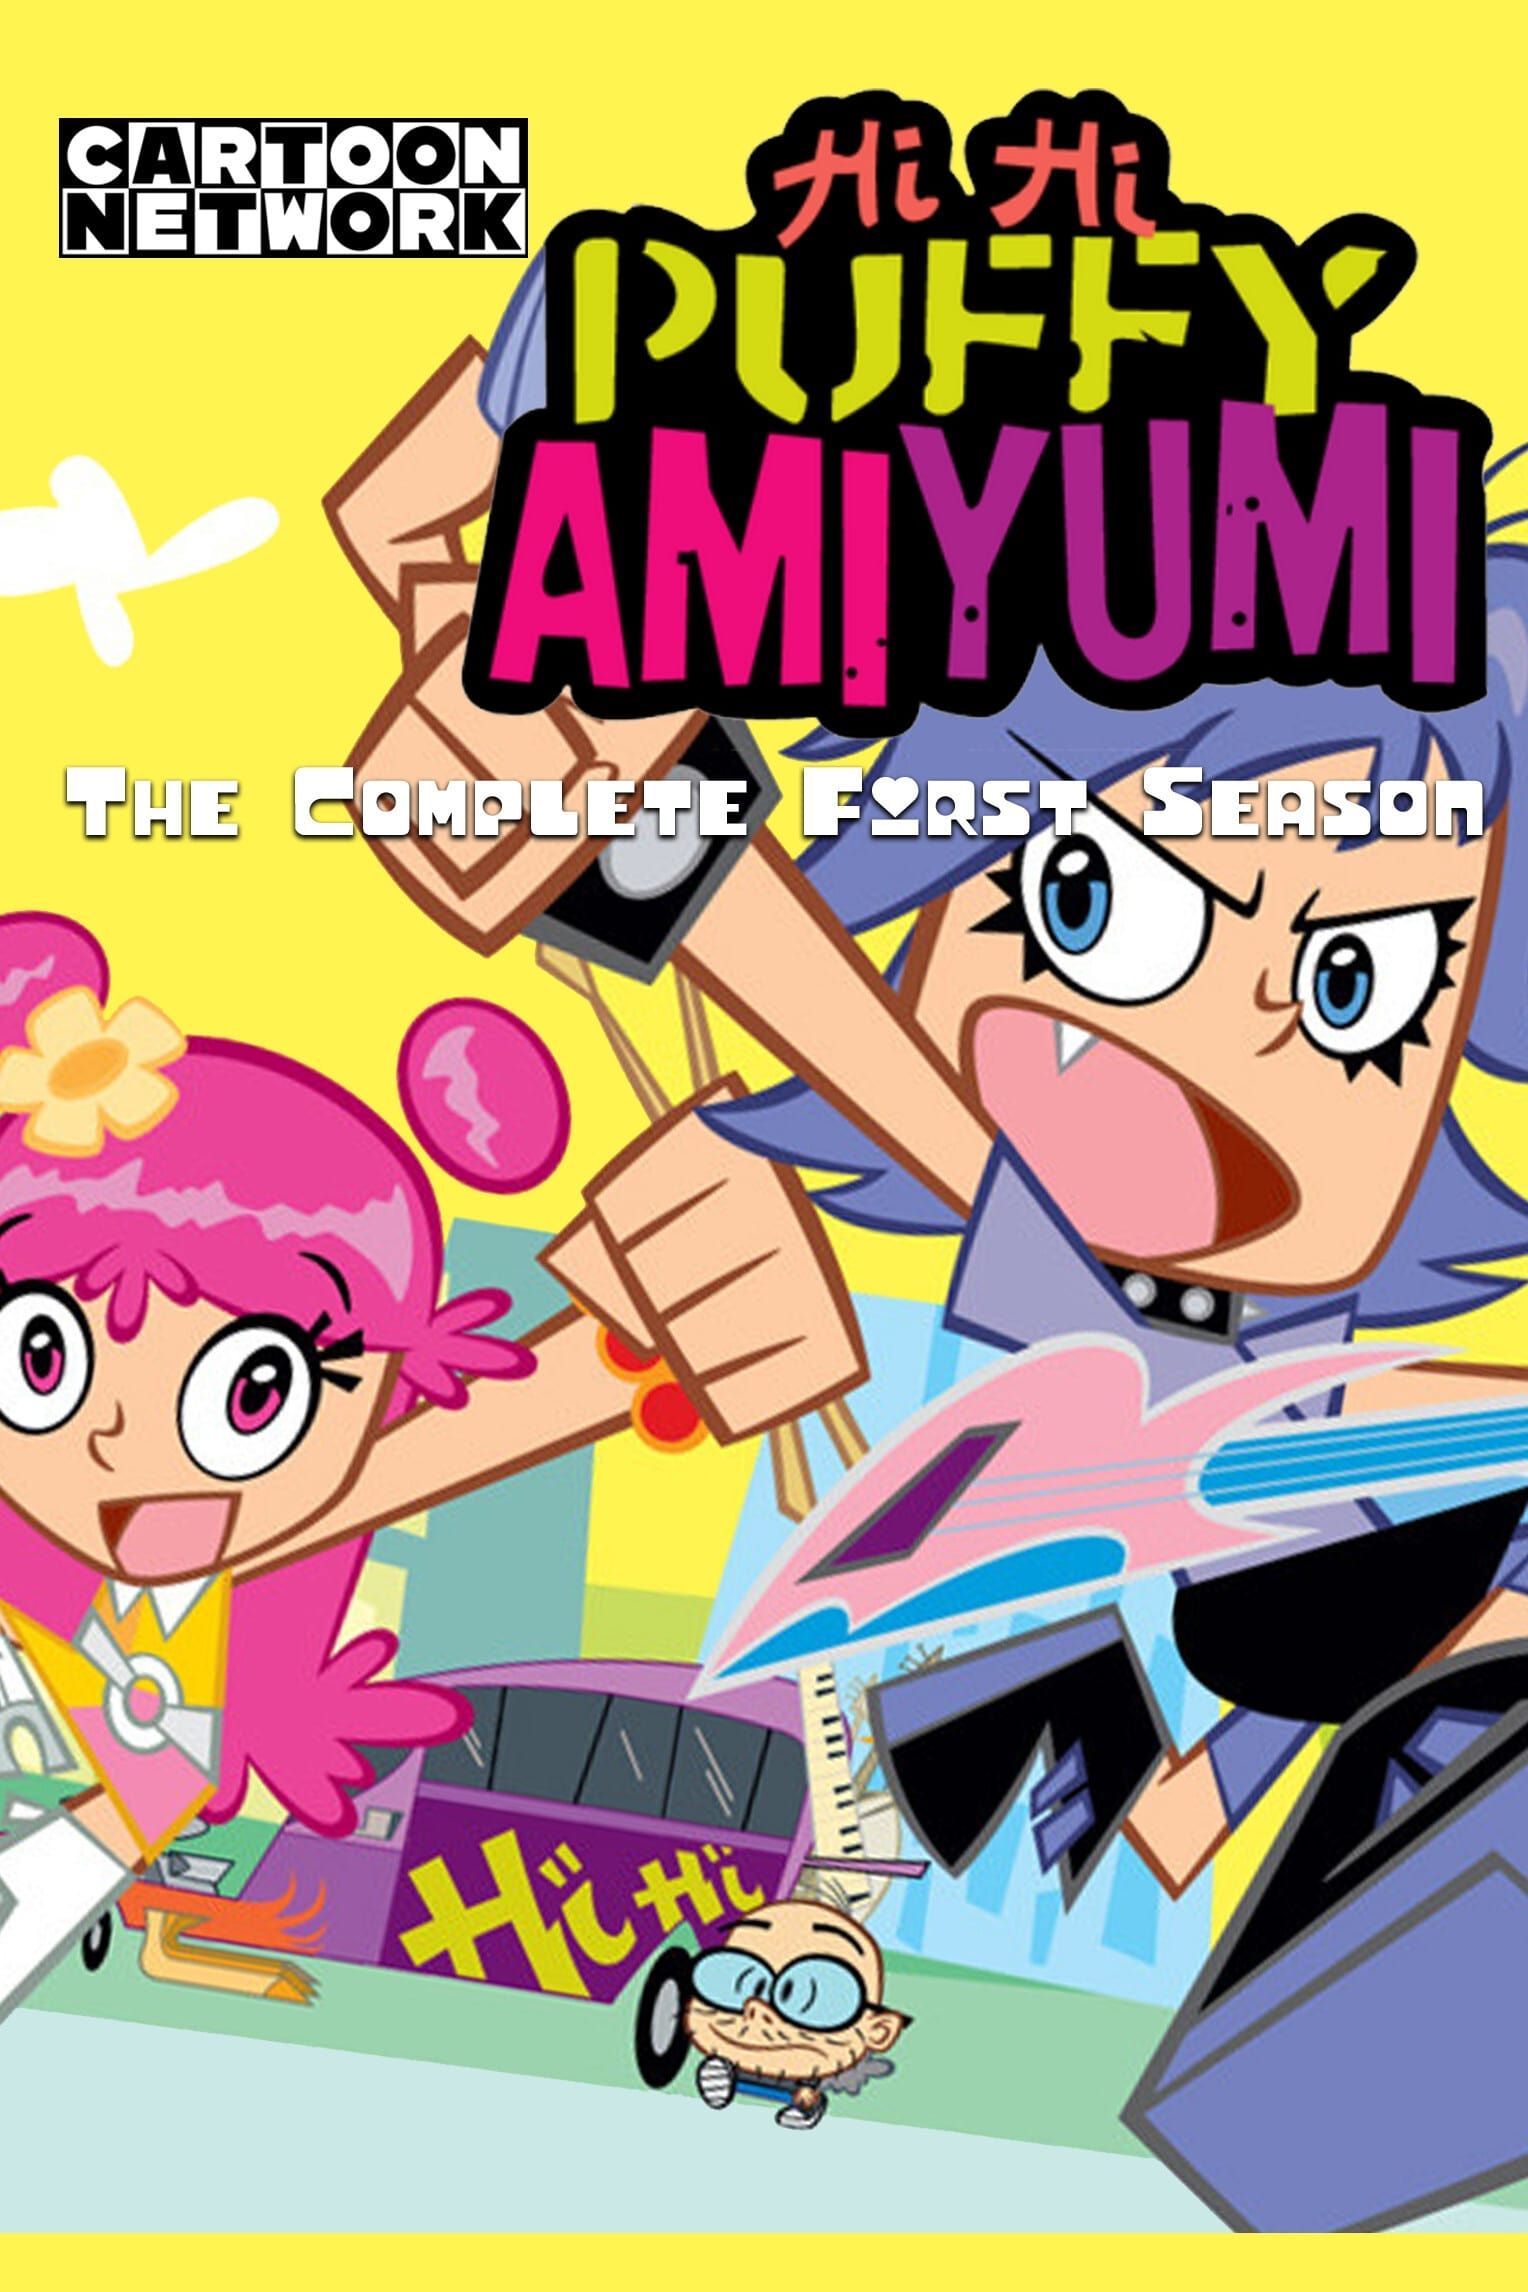 Hi Hi Puffy AmiYumi: Where to Watch and Stream Online